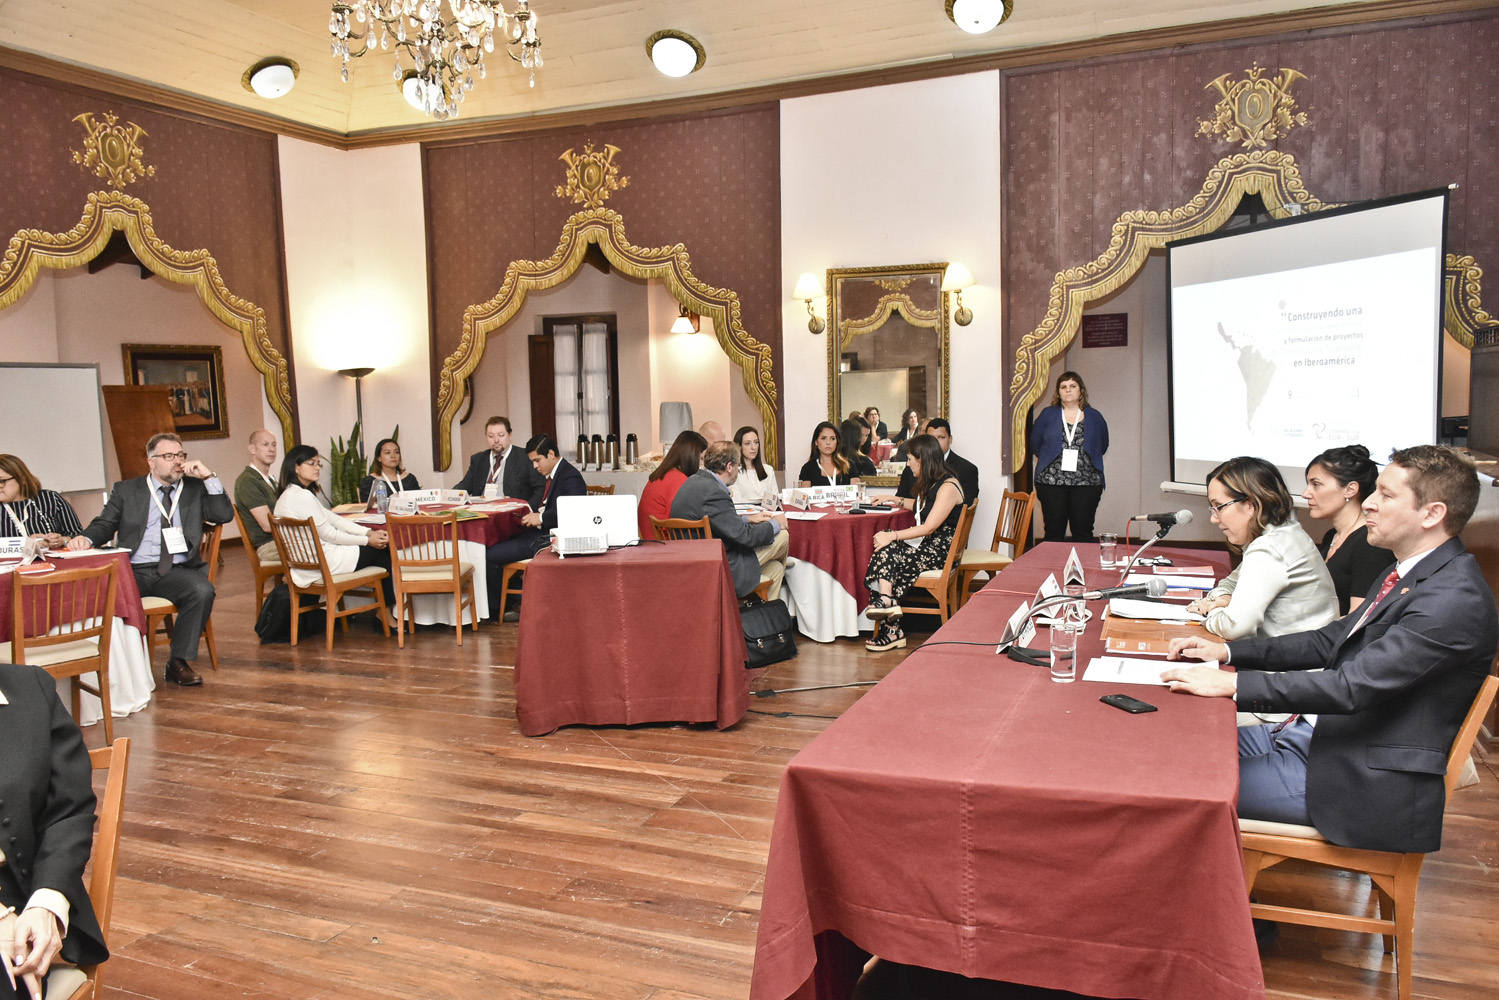 Capacitación a nivel internacional para mejorar la calidad de la cooperación triangular se realiza en Asunción